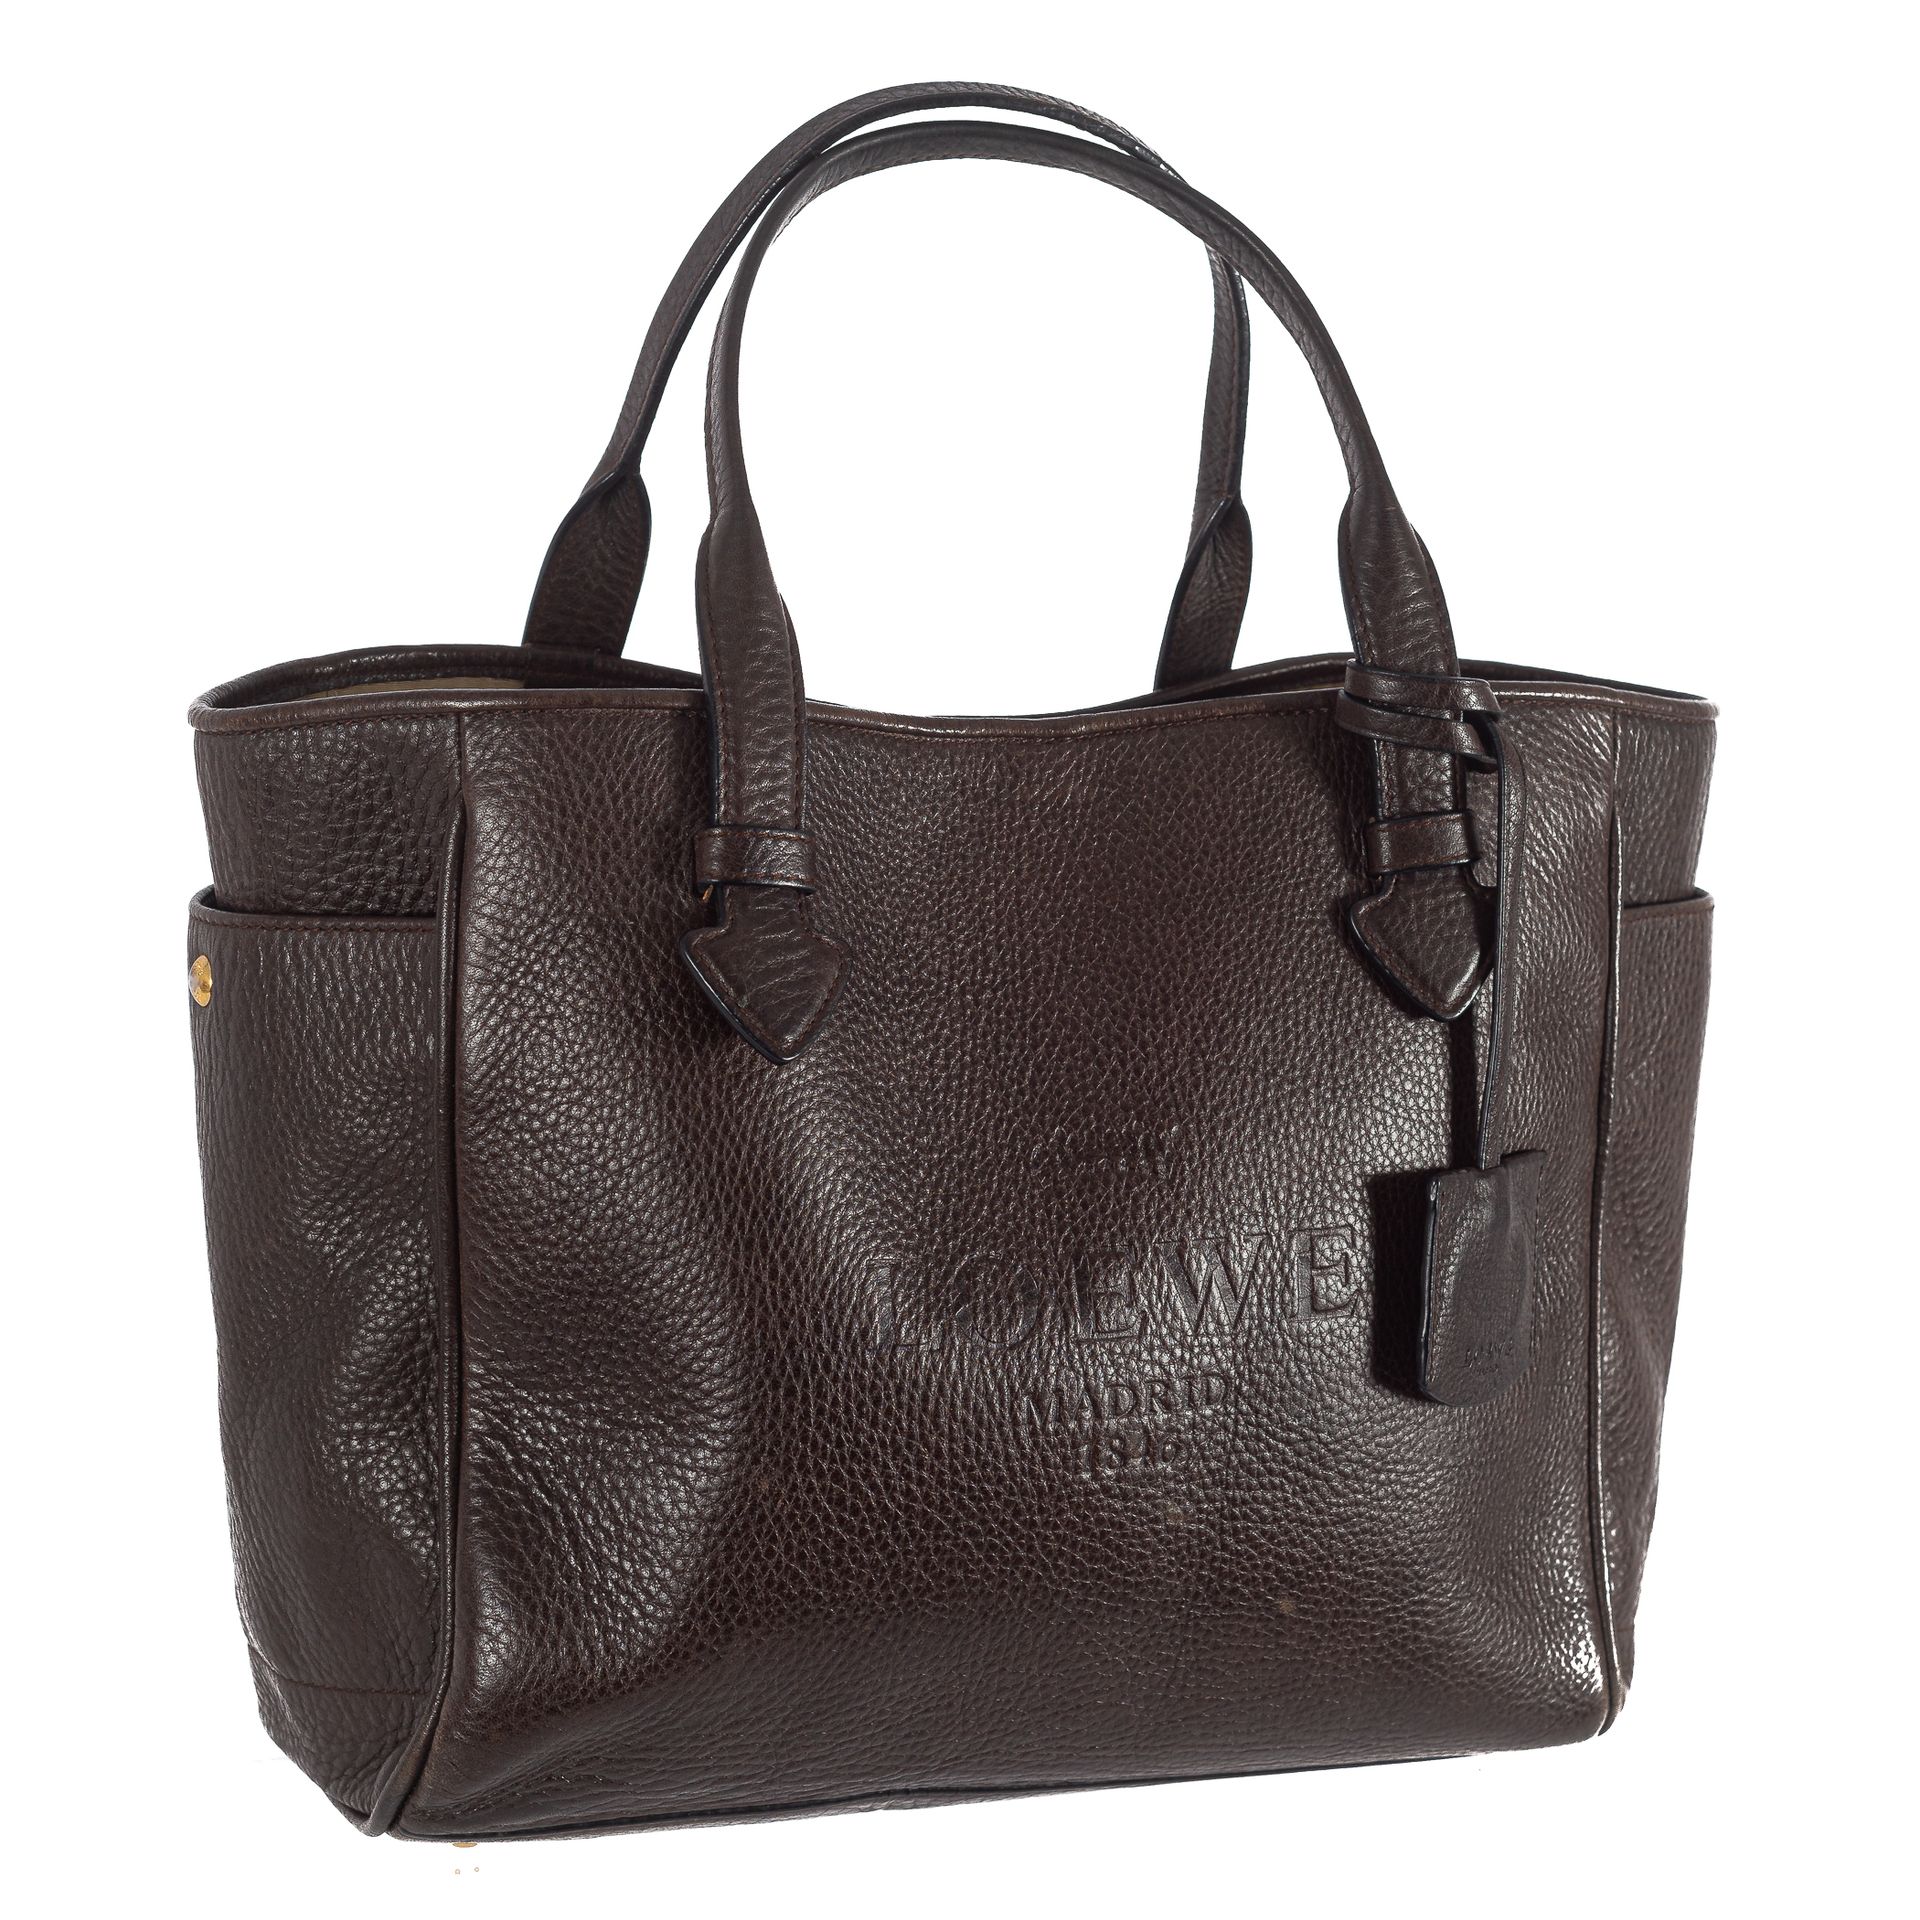 Loewe vintage tote bag. In dark brown caviar or grained…